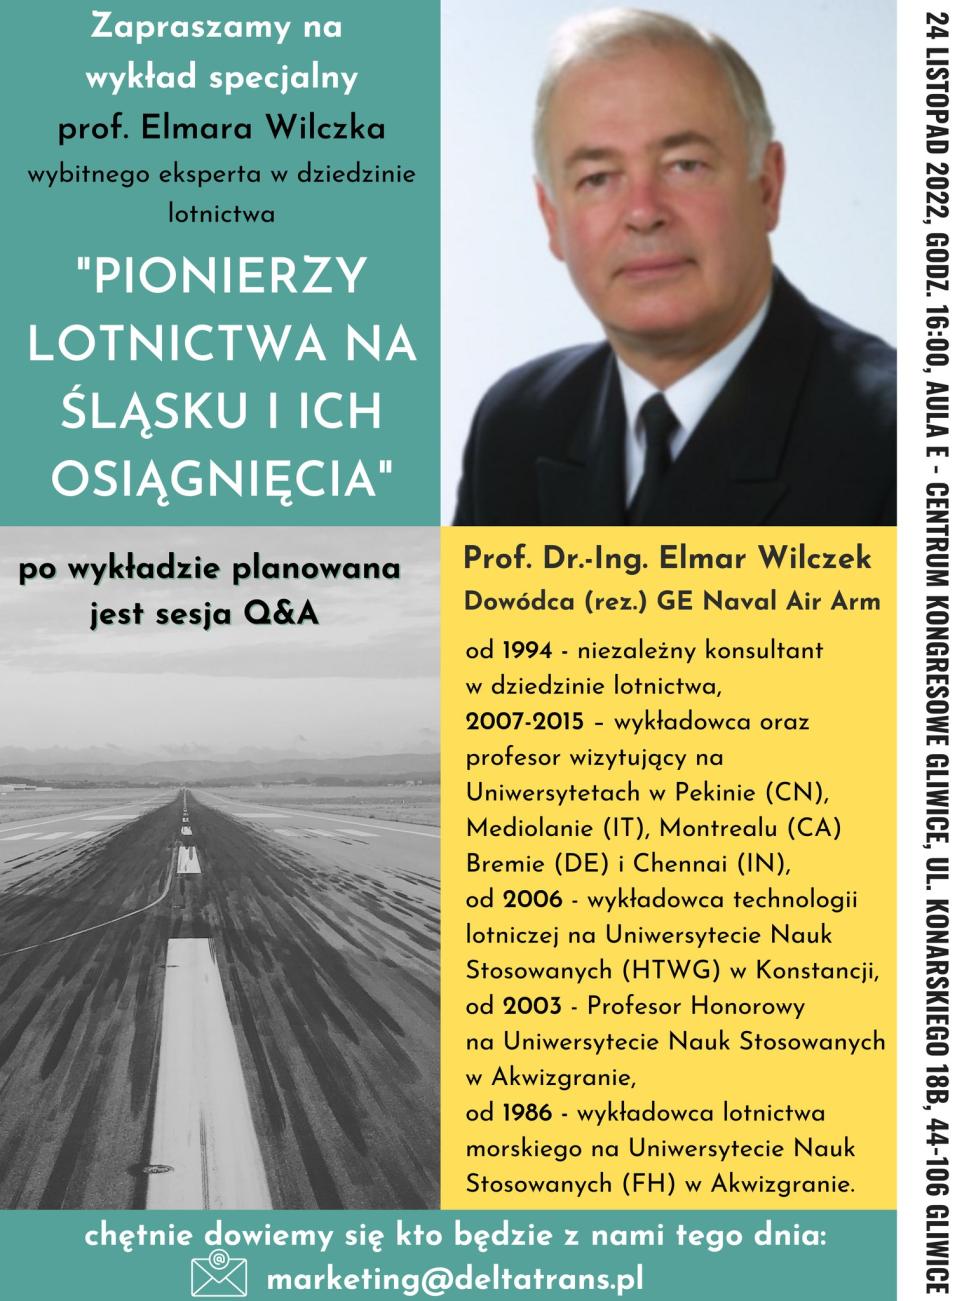 "Pionierzy lotnictwa na Śląsku i ich osiągnięcia" - wykład prof. Elmara Wilczka (fot. Grupa Delta Trans)